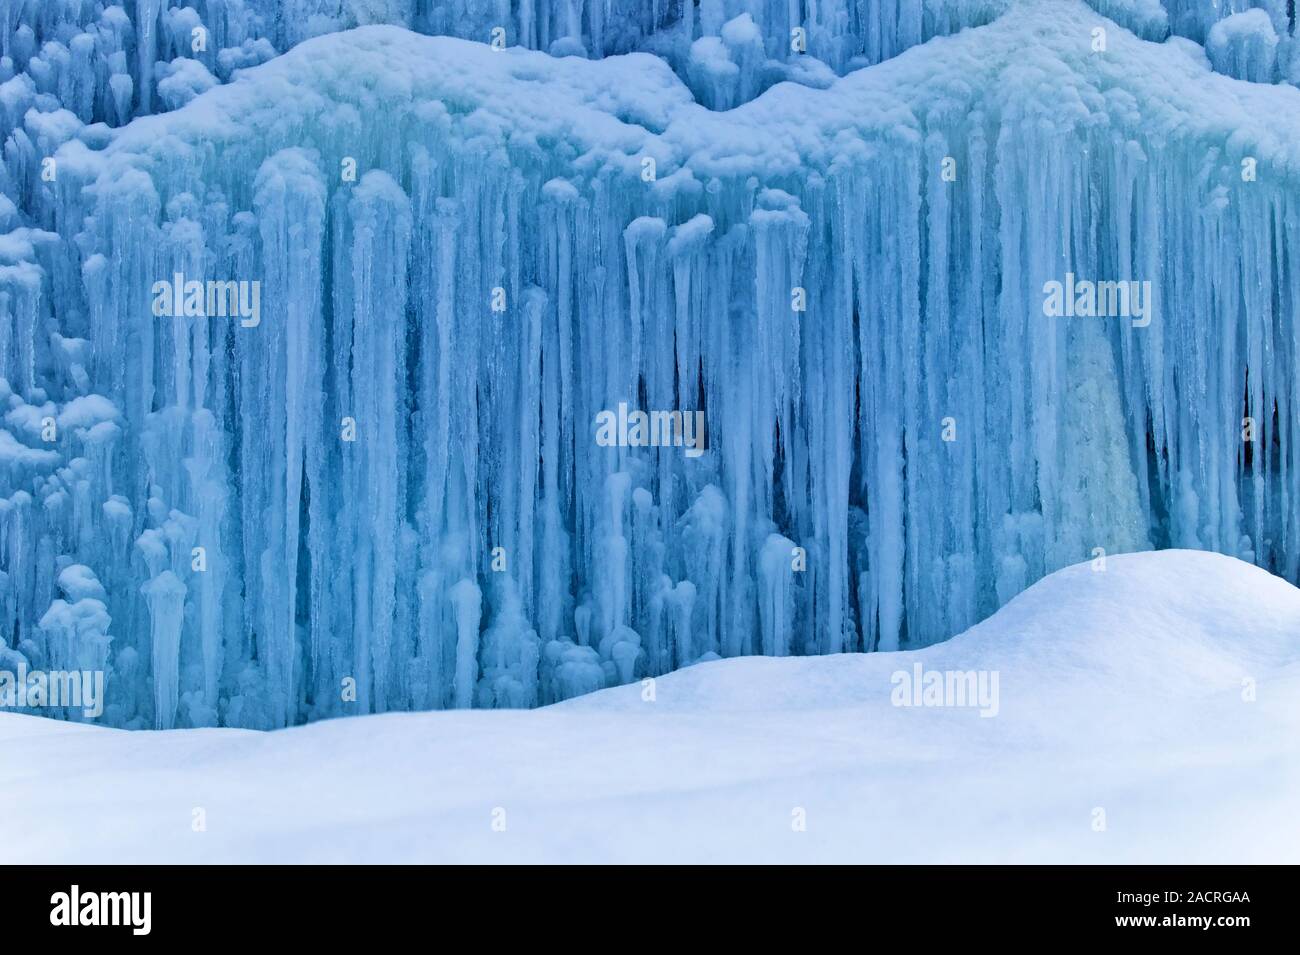 Frozen waterfall in winter Stock Photo